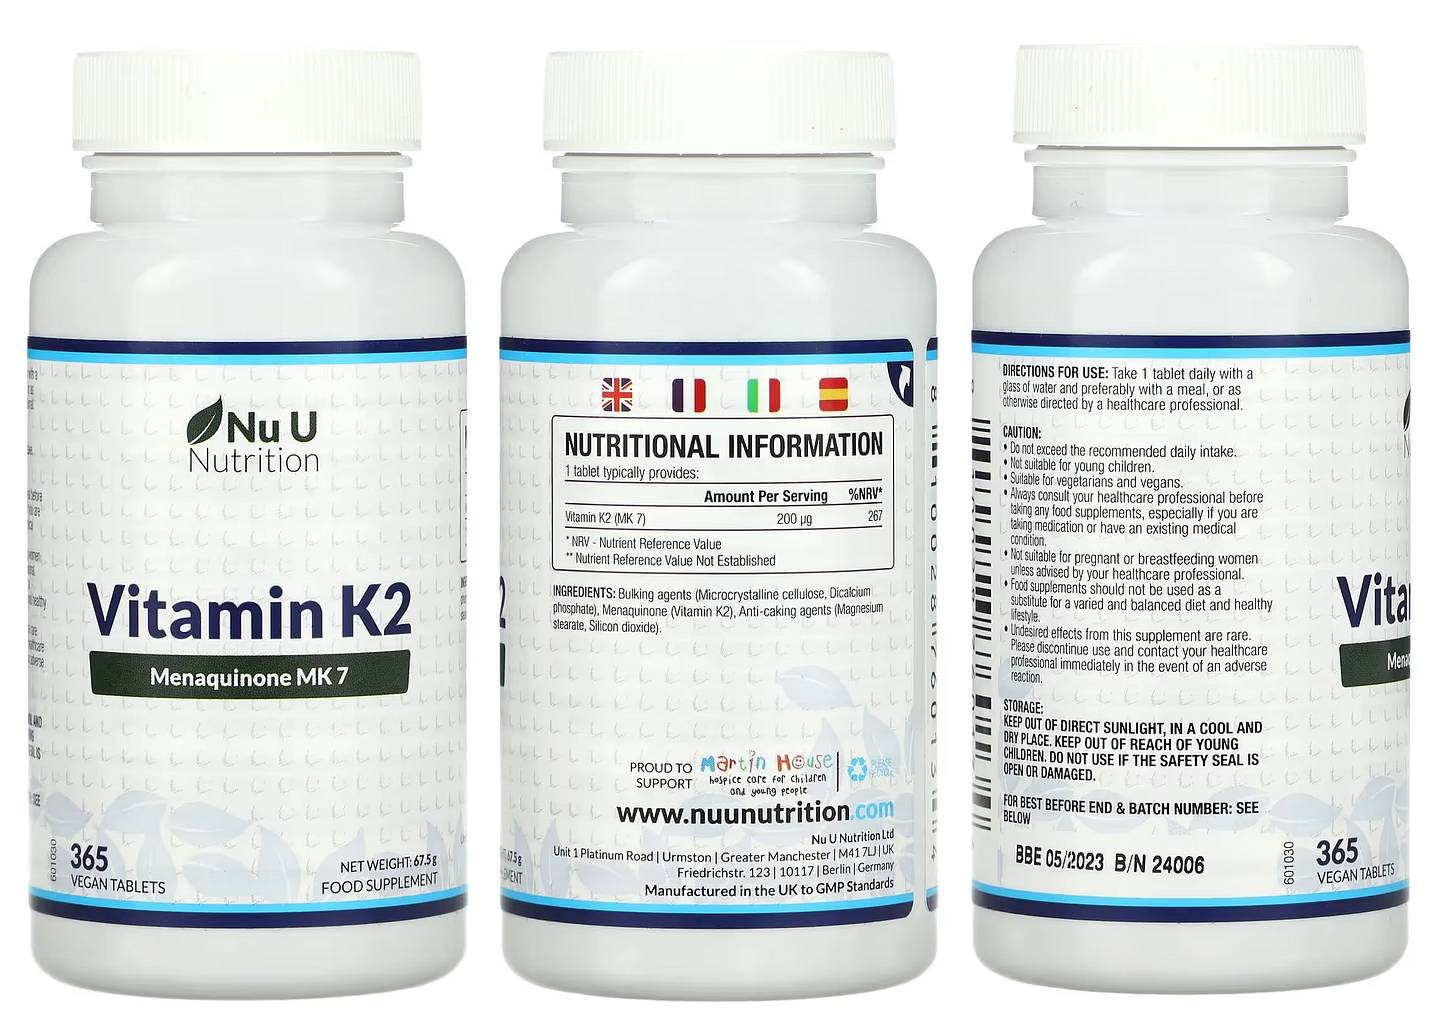 Nu U Nutrition, Vitamin K2 packaging